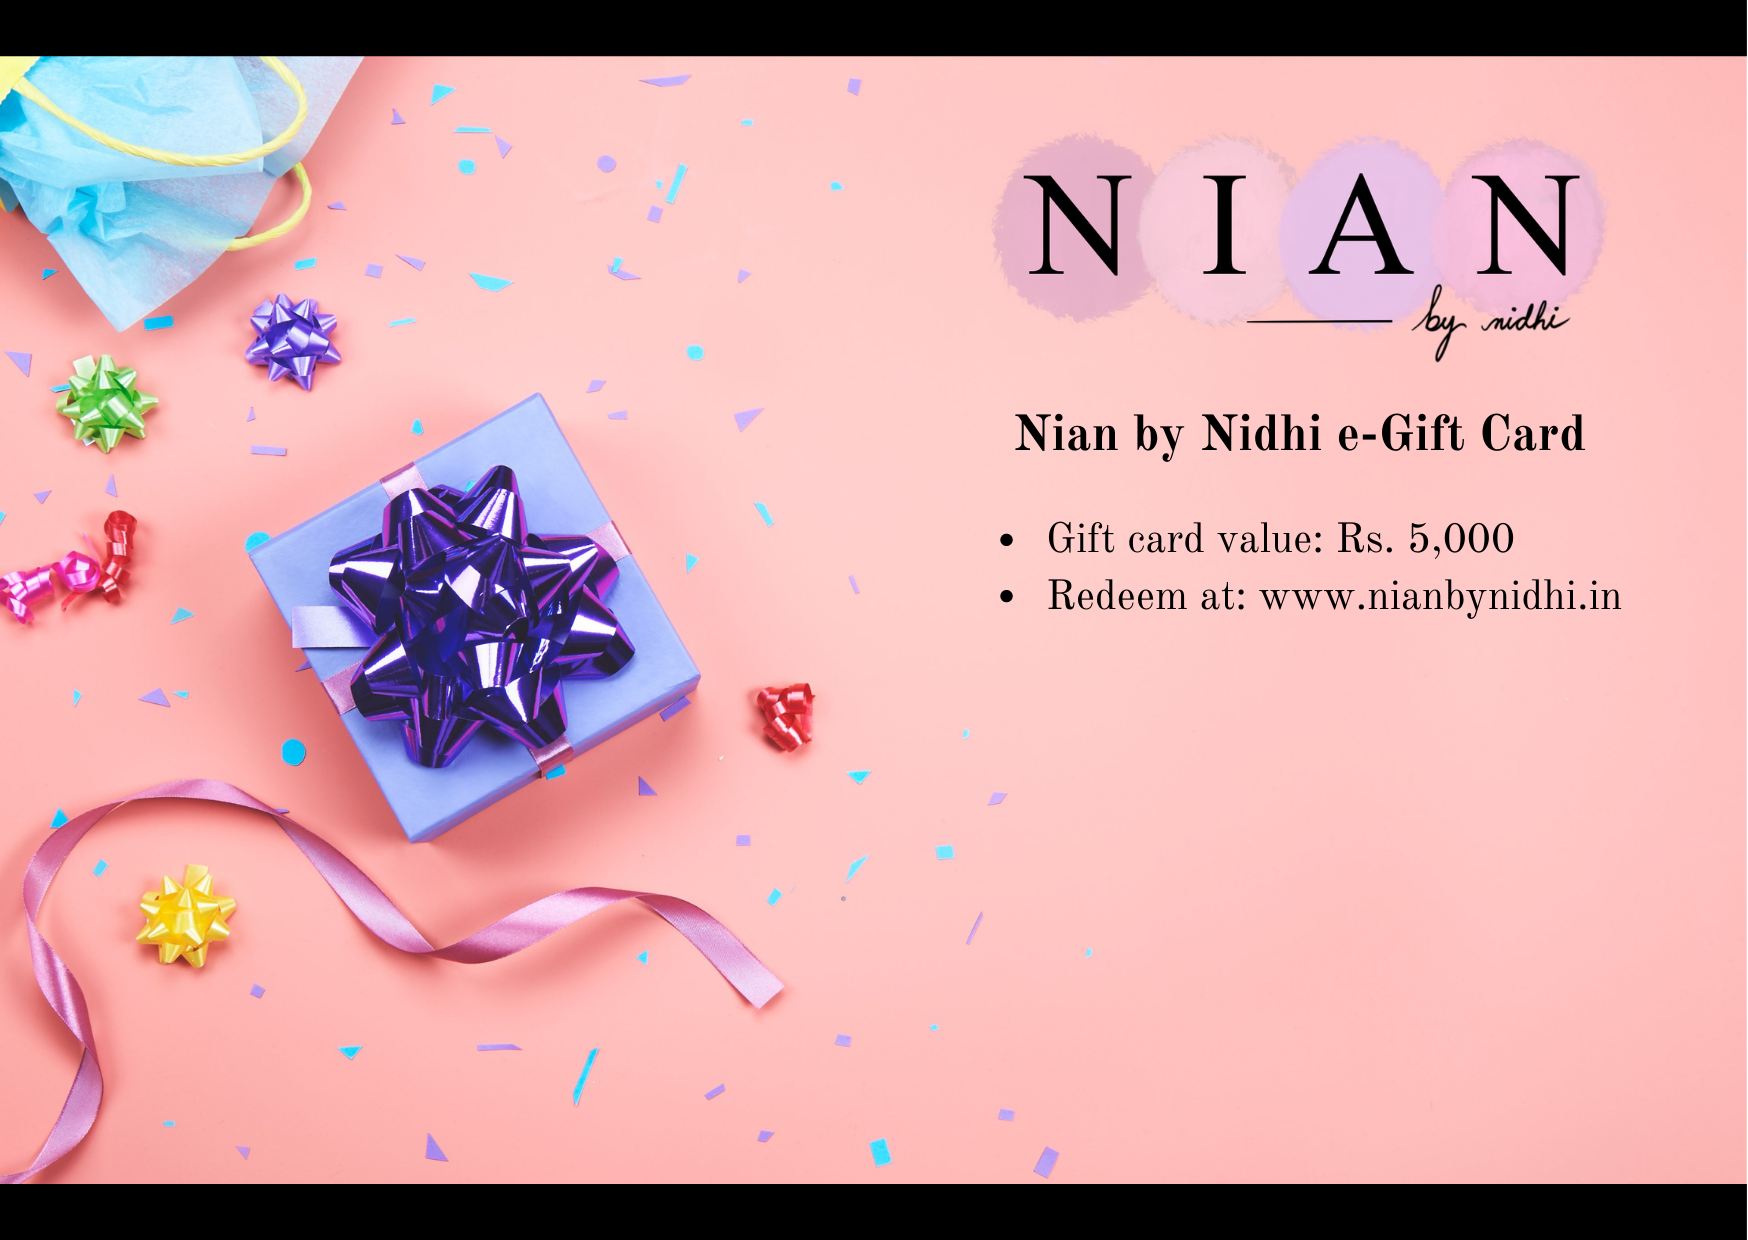 Nian by Nidhi e-Gift Card